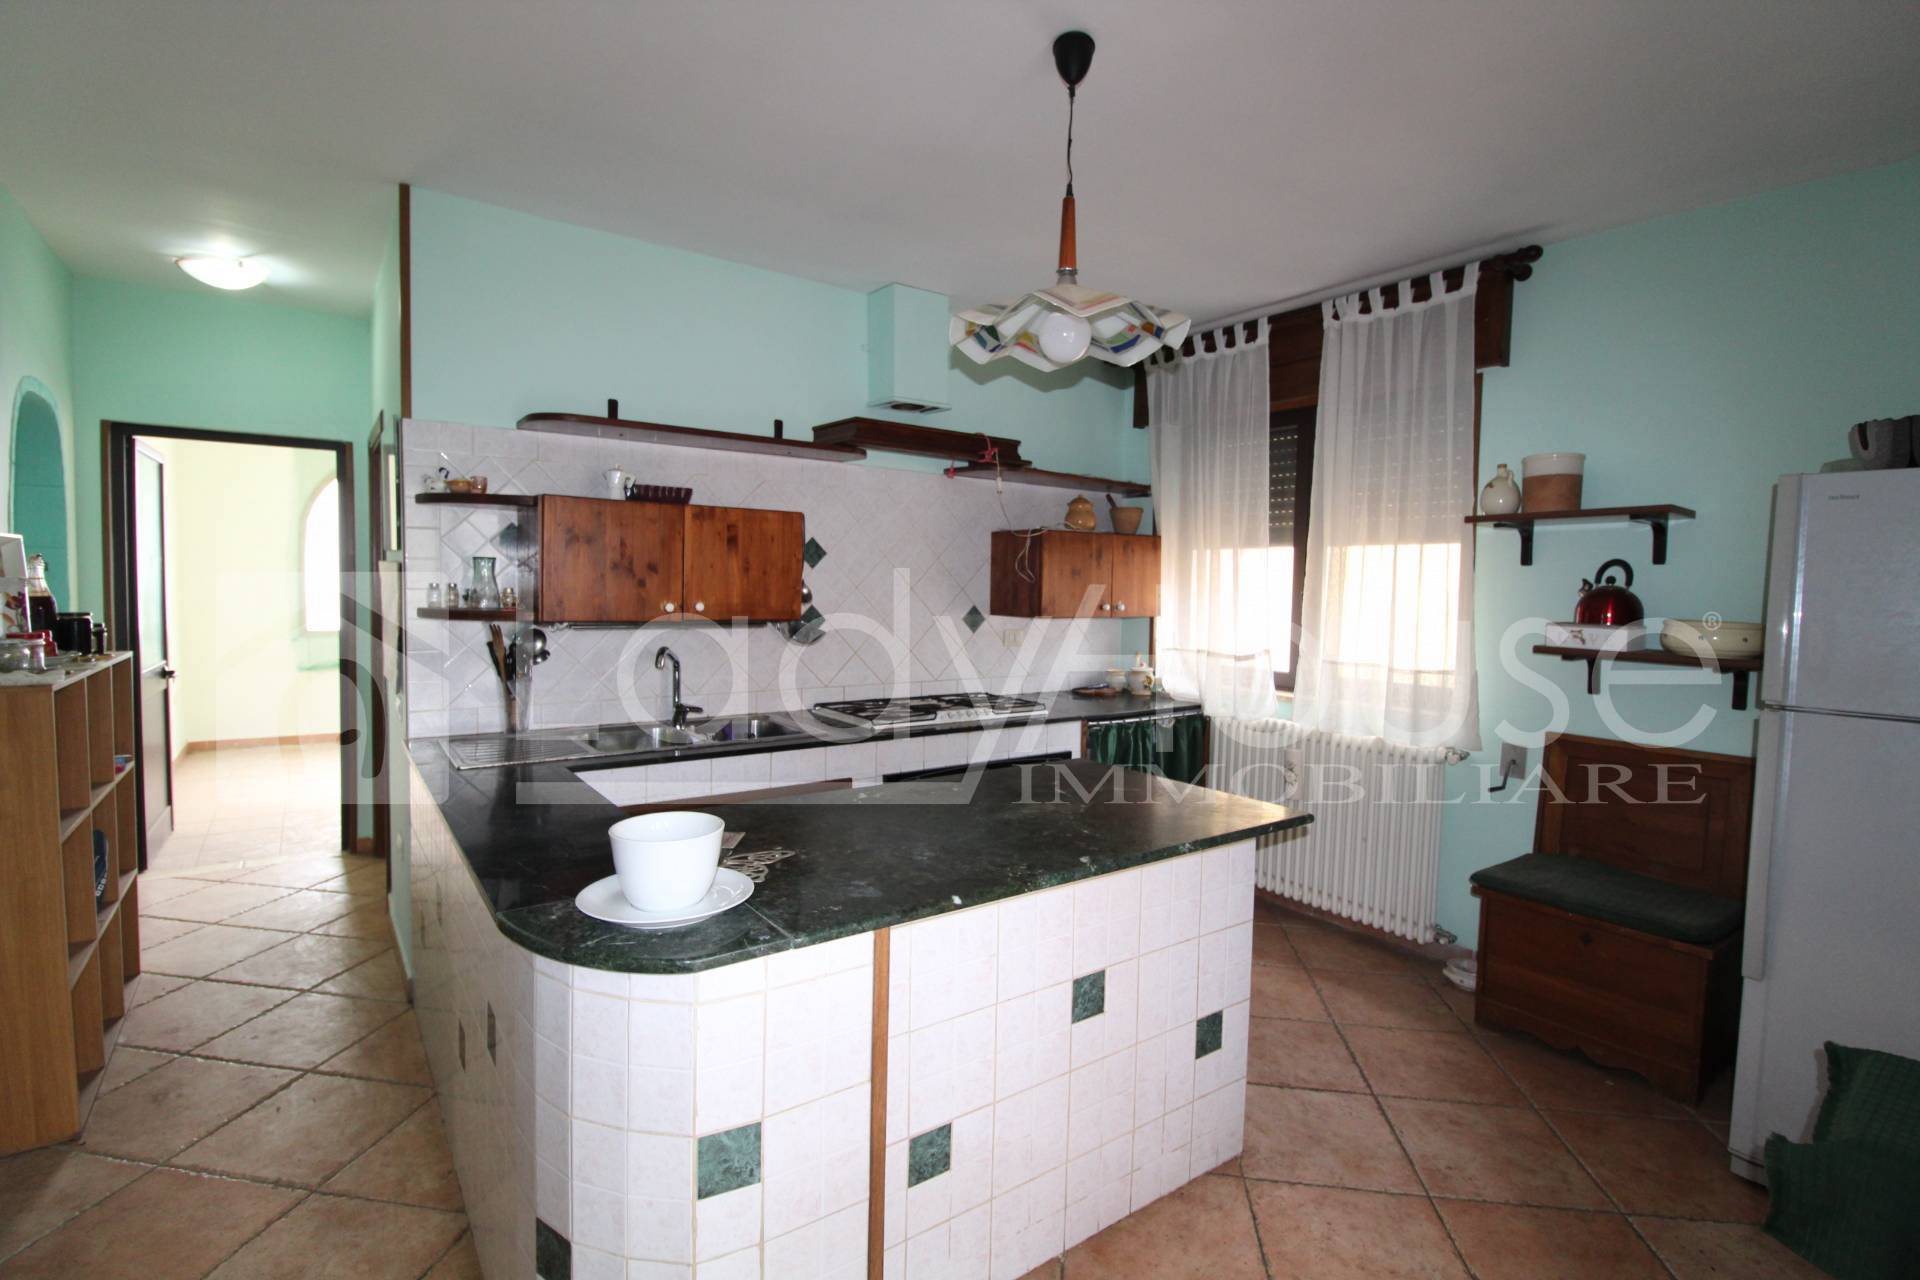 Appartamento in vendita a Sannicola, 4 locali, prezzo € 145.000 | PortaleAgenzieImmobiliari.it